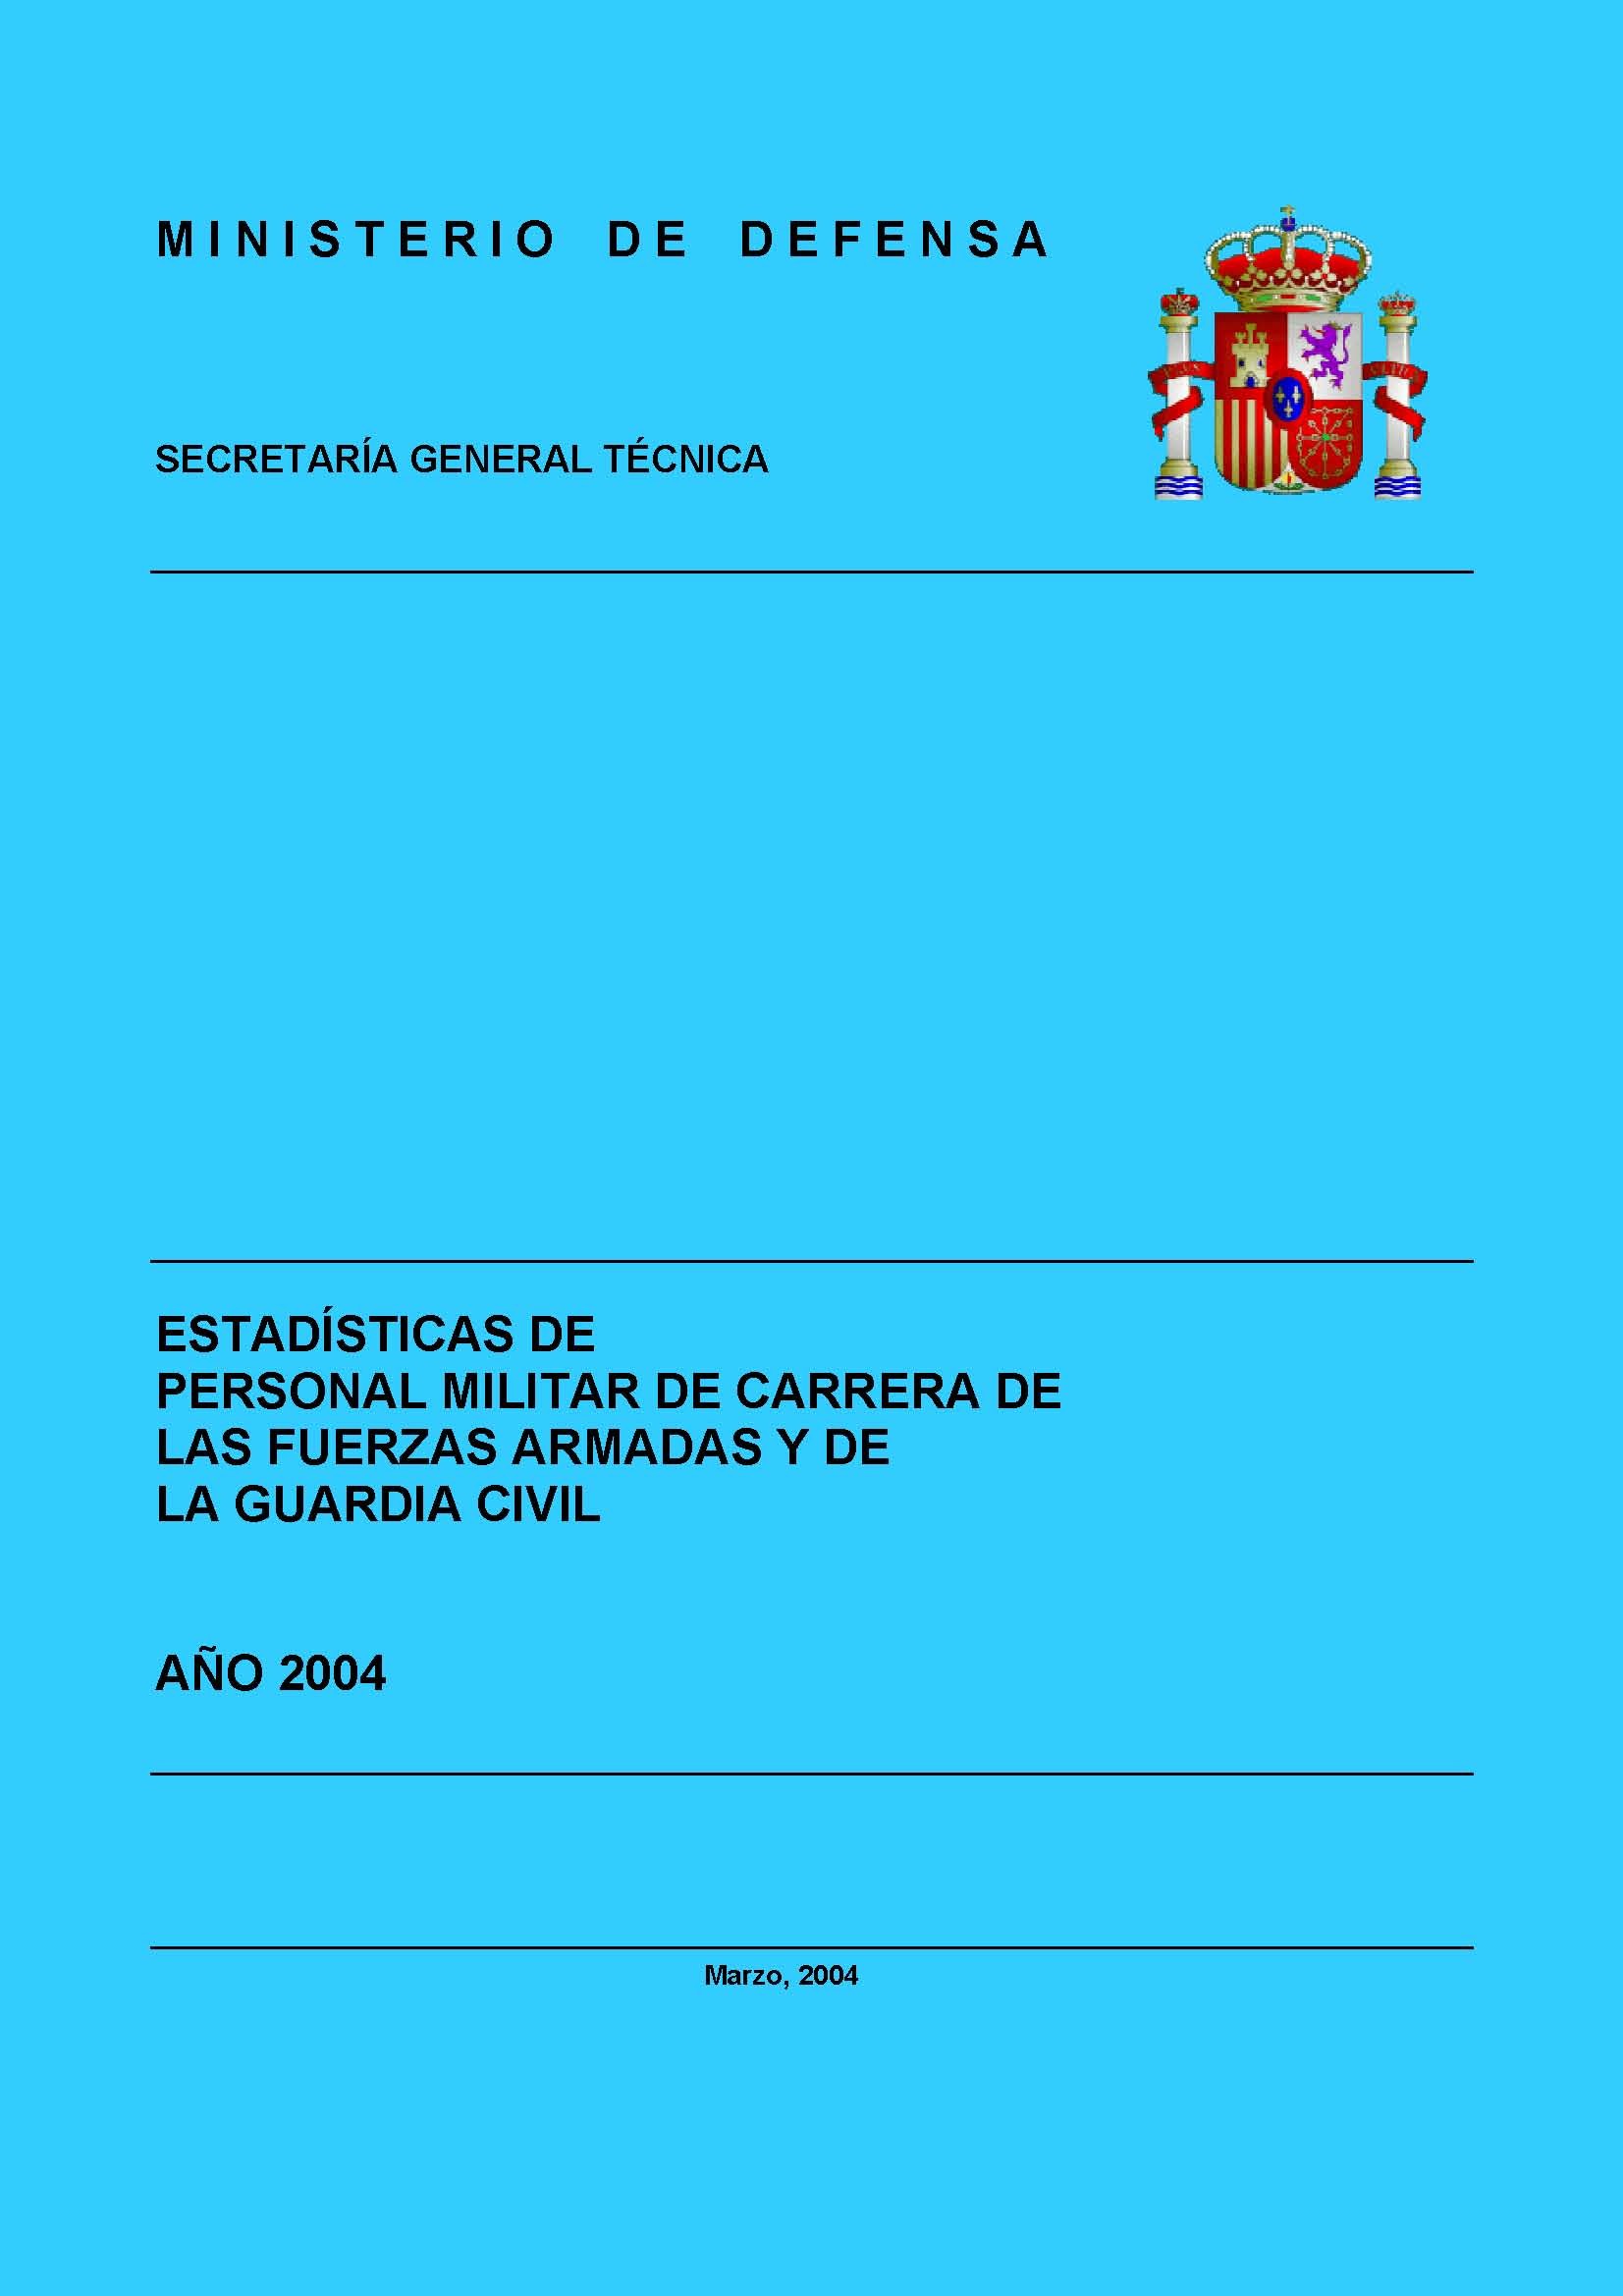 ESTADÍSTICA DEL PERSONAL MILITAR DE CARRERA DE LAS FUERZAS ARMADAS Y DE LA GUARDIA CIVIL 2004